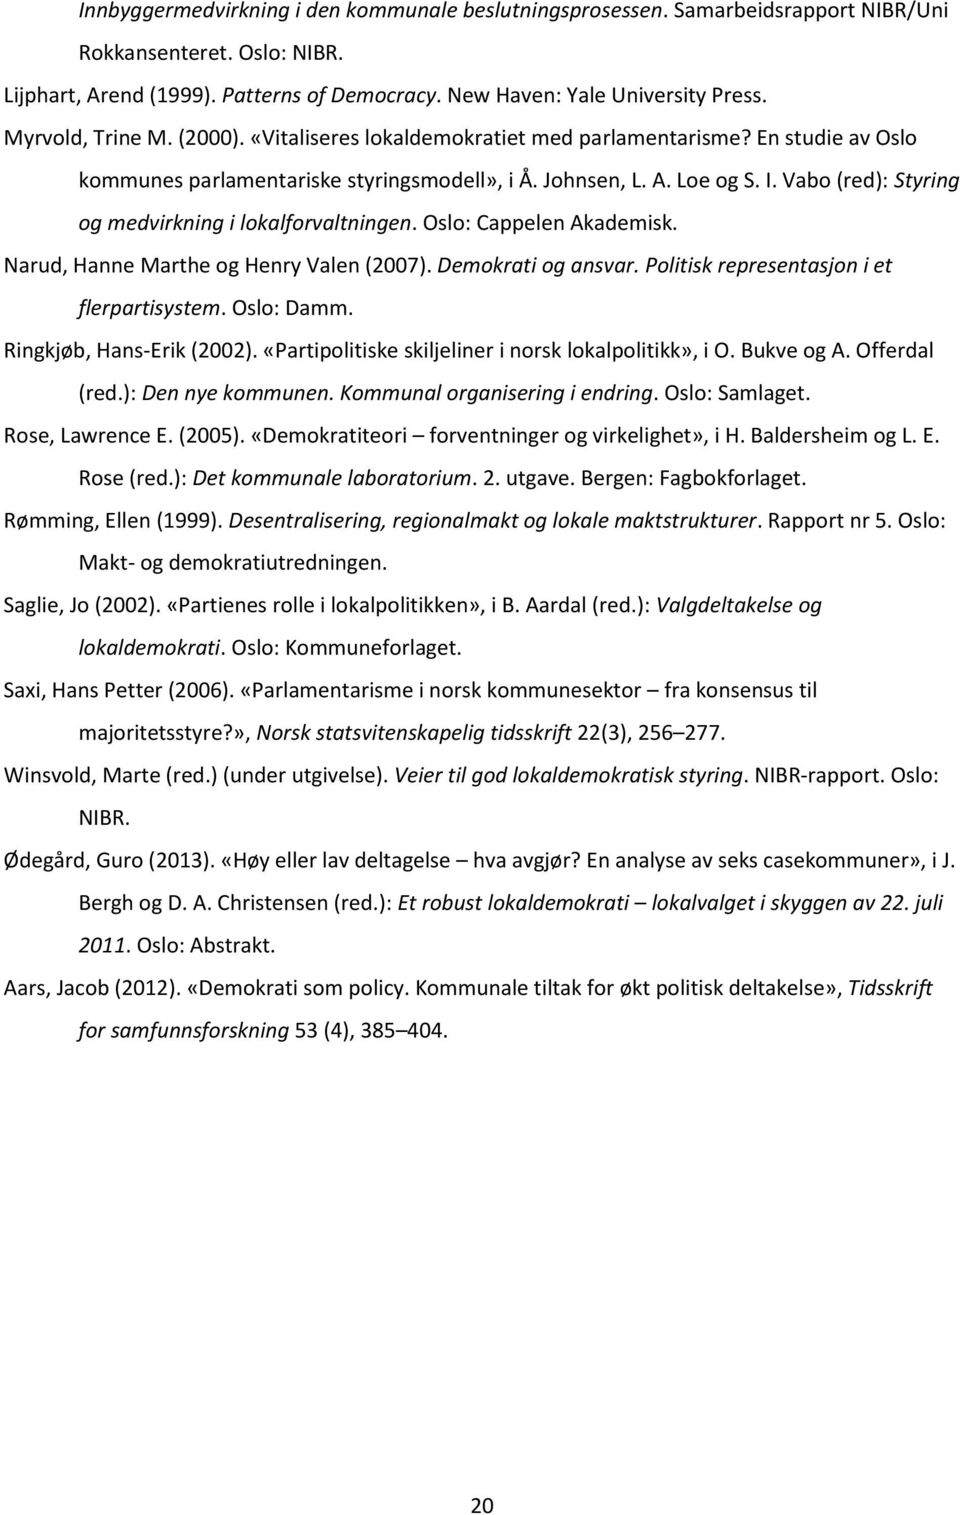 Vabo (red): Styring og medvirkning i lokalforvaltningen. Oslo: Cappelen Akademisk. Narud, Hanne Marthe og Henry Valen (2007). Demokrati og ansvar. Politisk representasjon i et flerpartisystem.